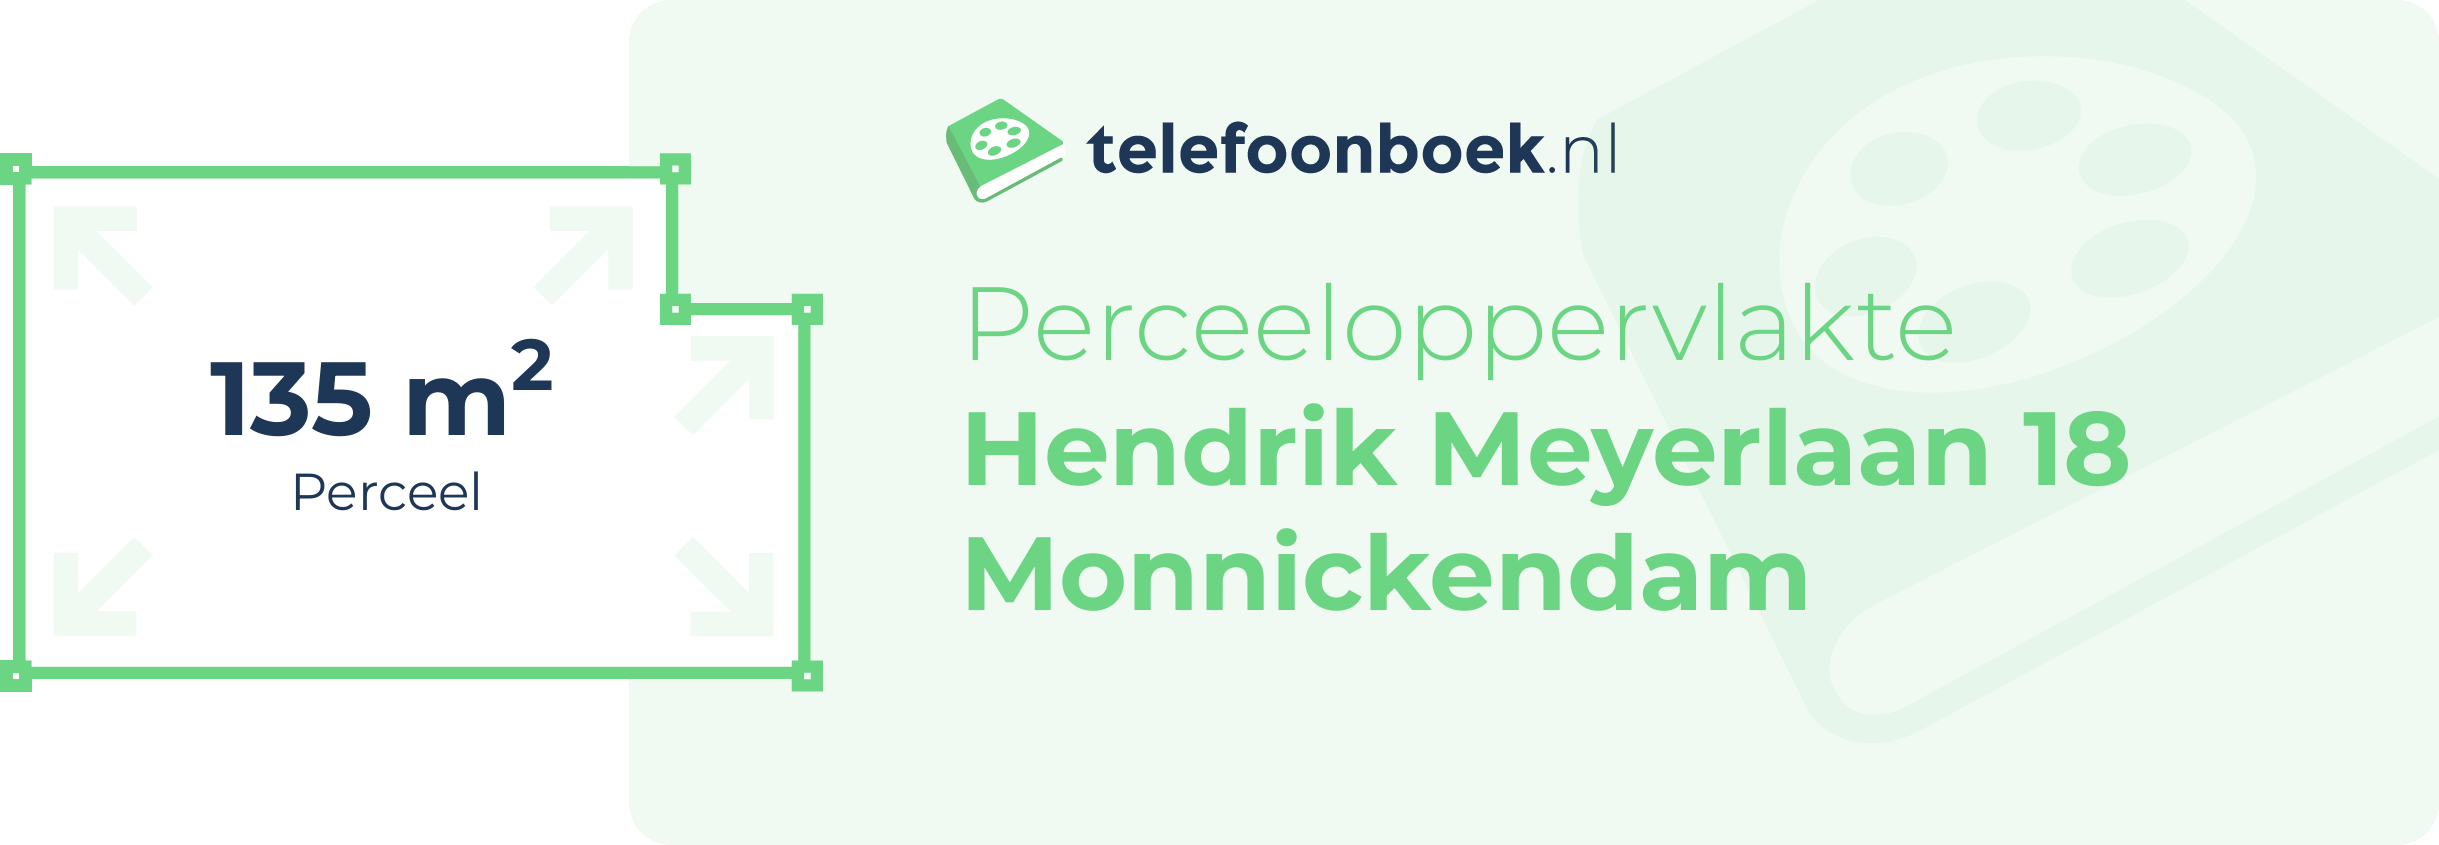 Perceeloppervlakte Hendrik Meyerlaan 18 Monnickendam